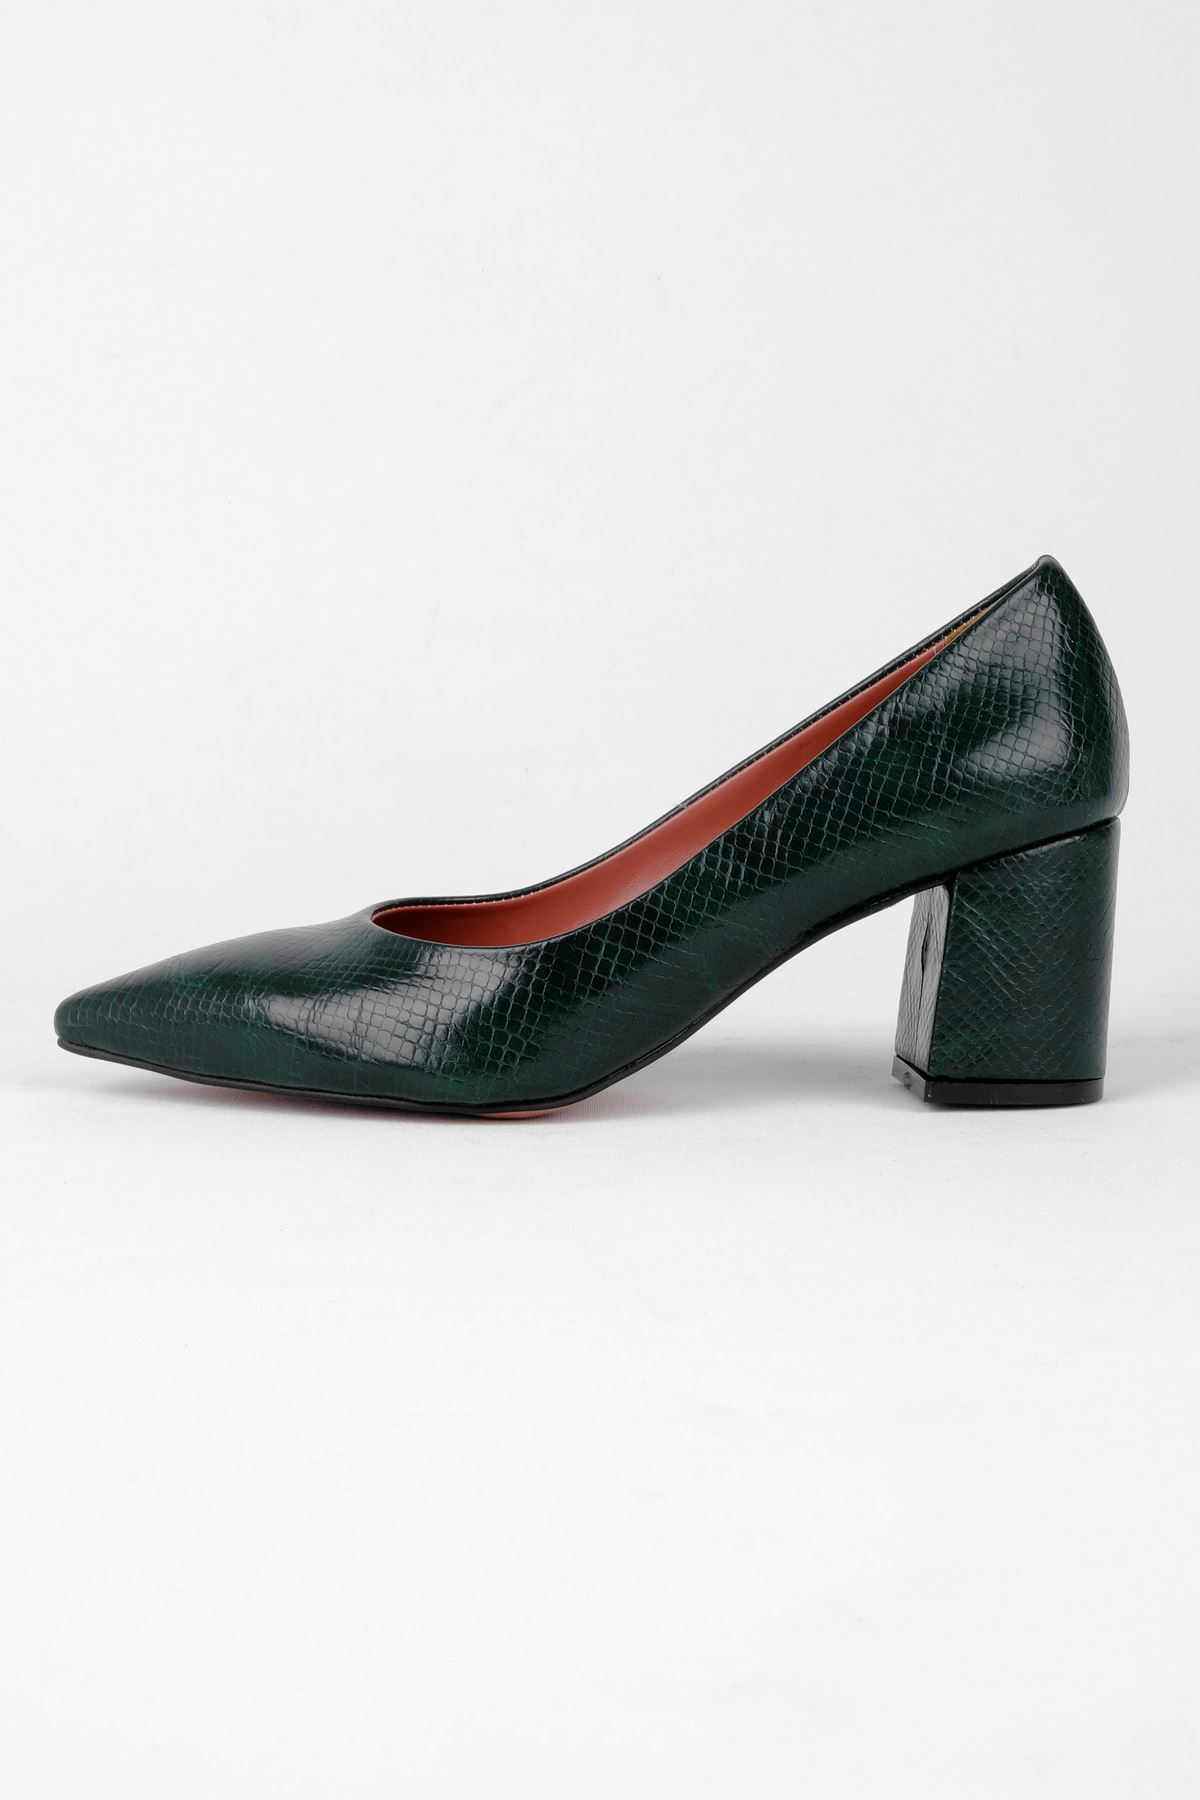 Honour Kadın Sivri Burun Kalın Topuklu Ayakkaı-Yeşil